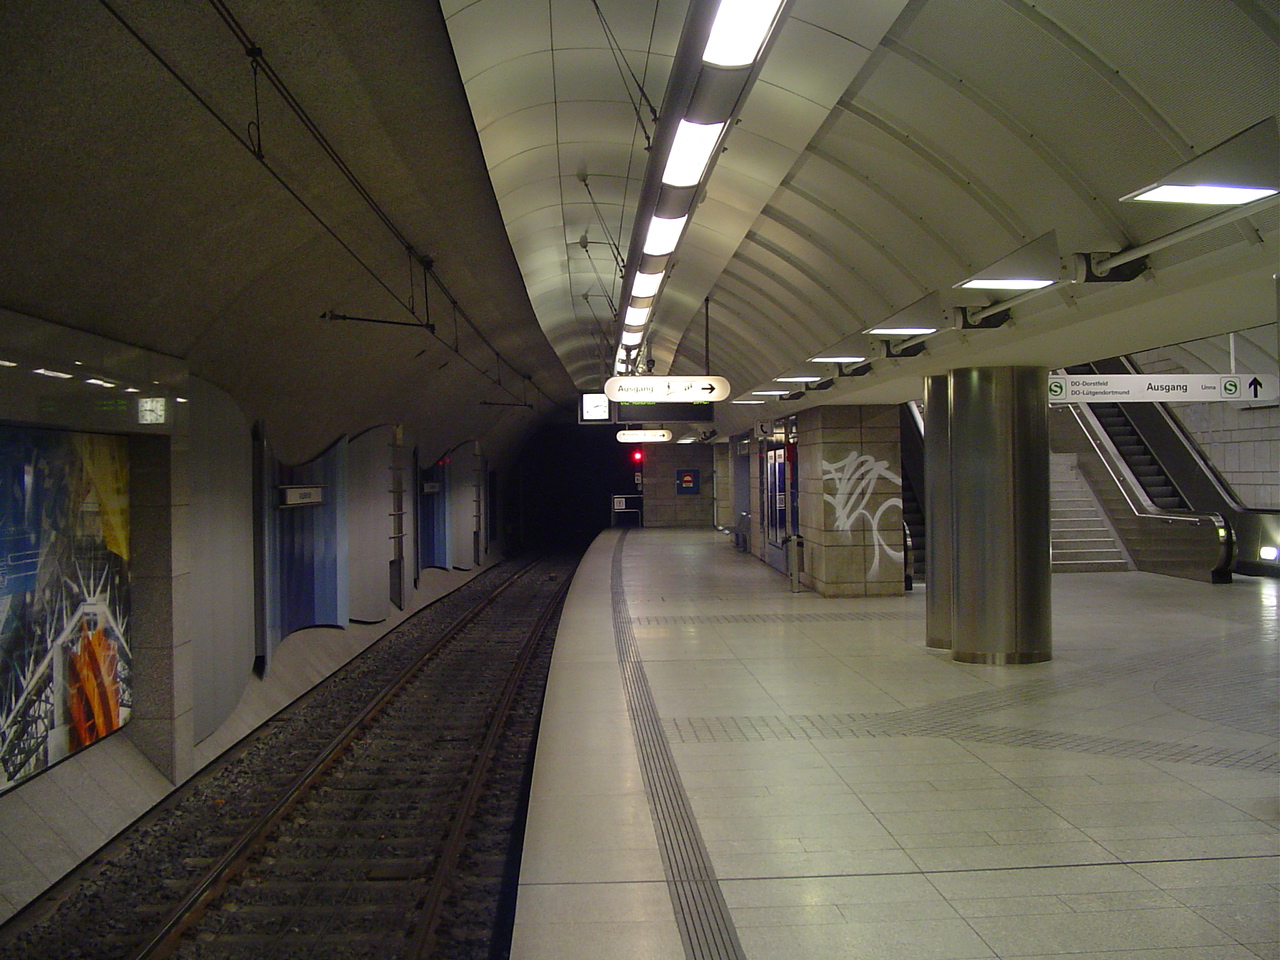 U Bahn Netz Hamburg